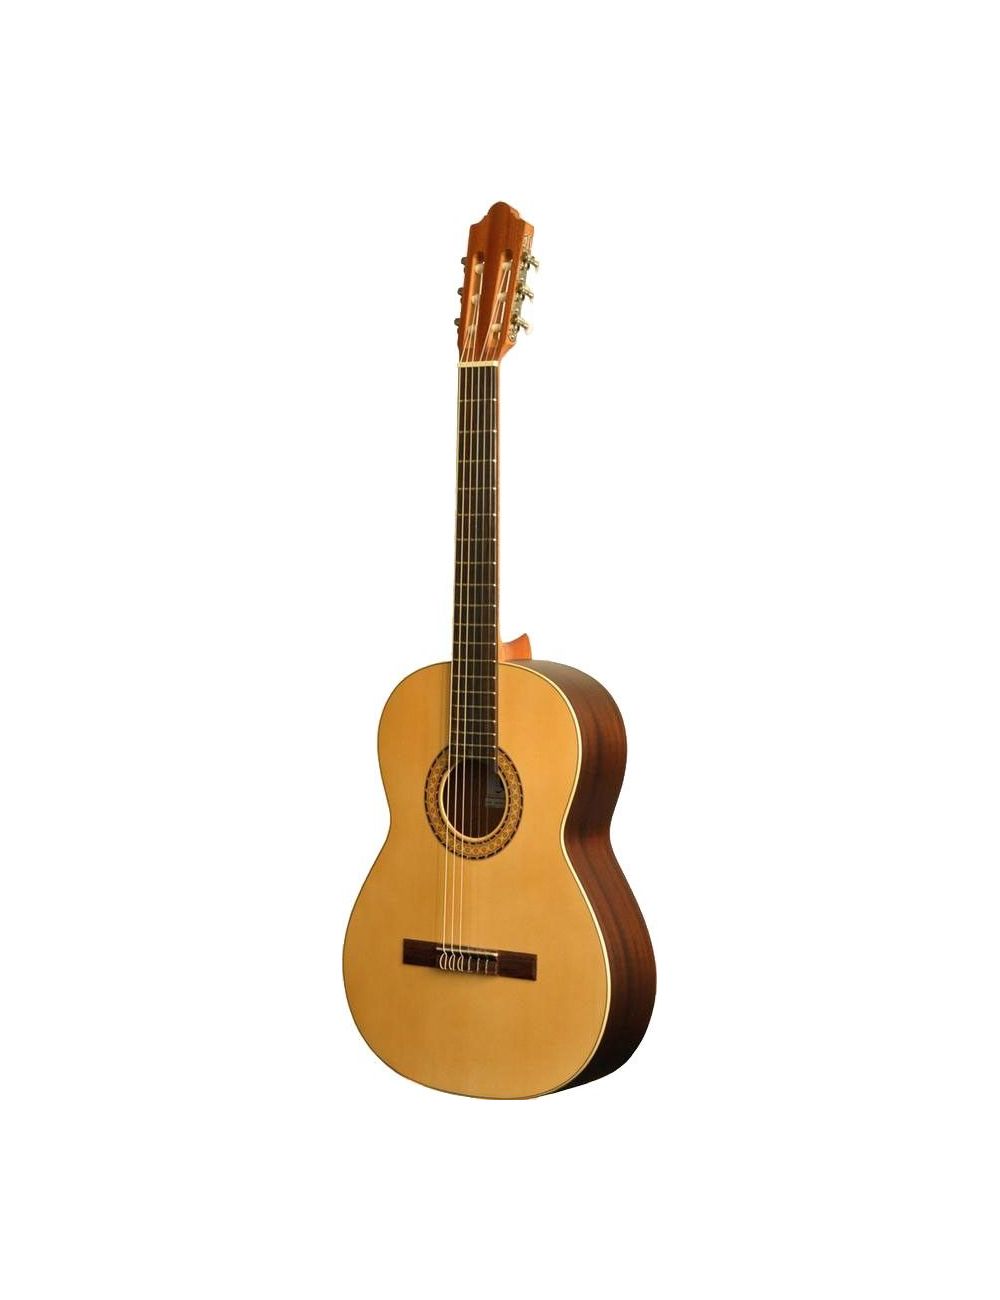 Modèle de guitare classique en bois avec support - Mini guitare